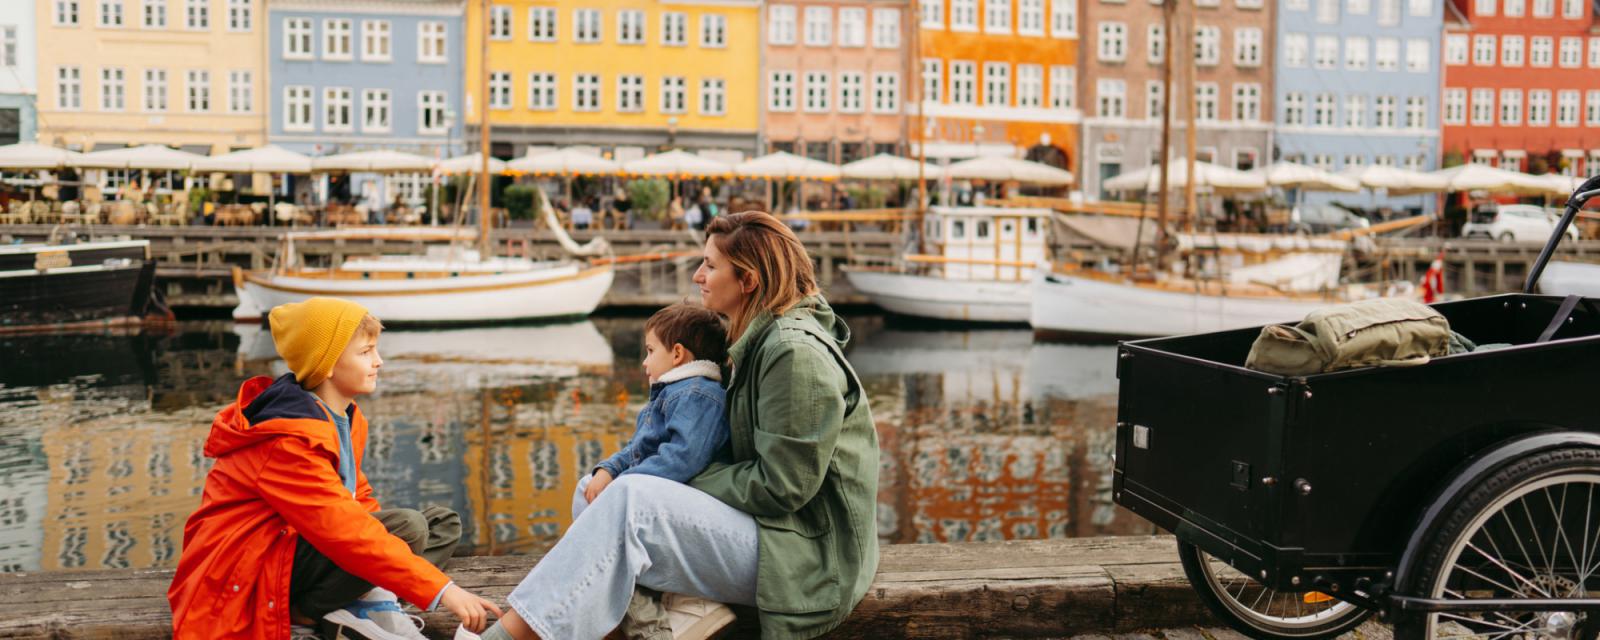 Een must-visit tijdens jouw citytrip: Nyhavn 